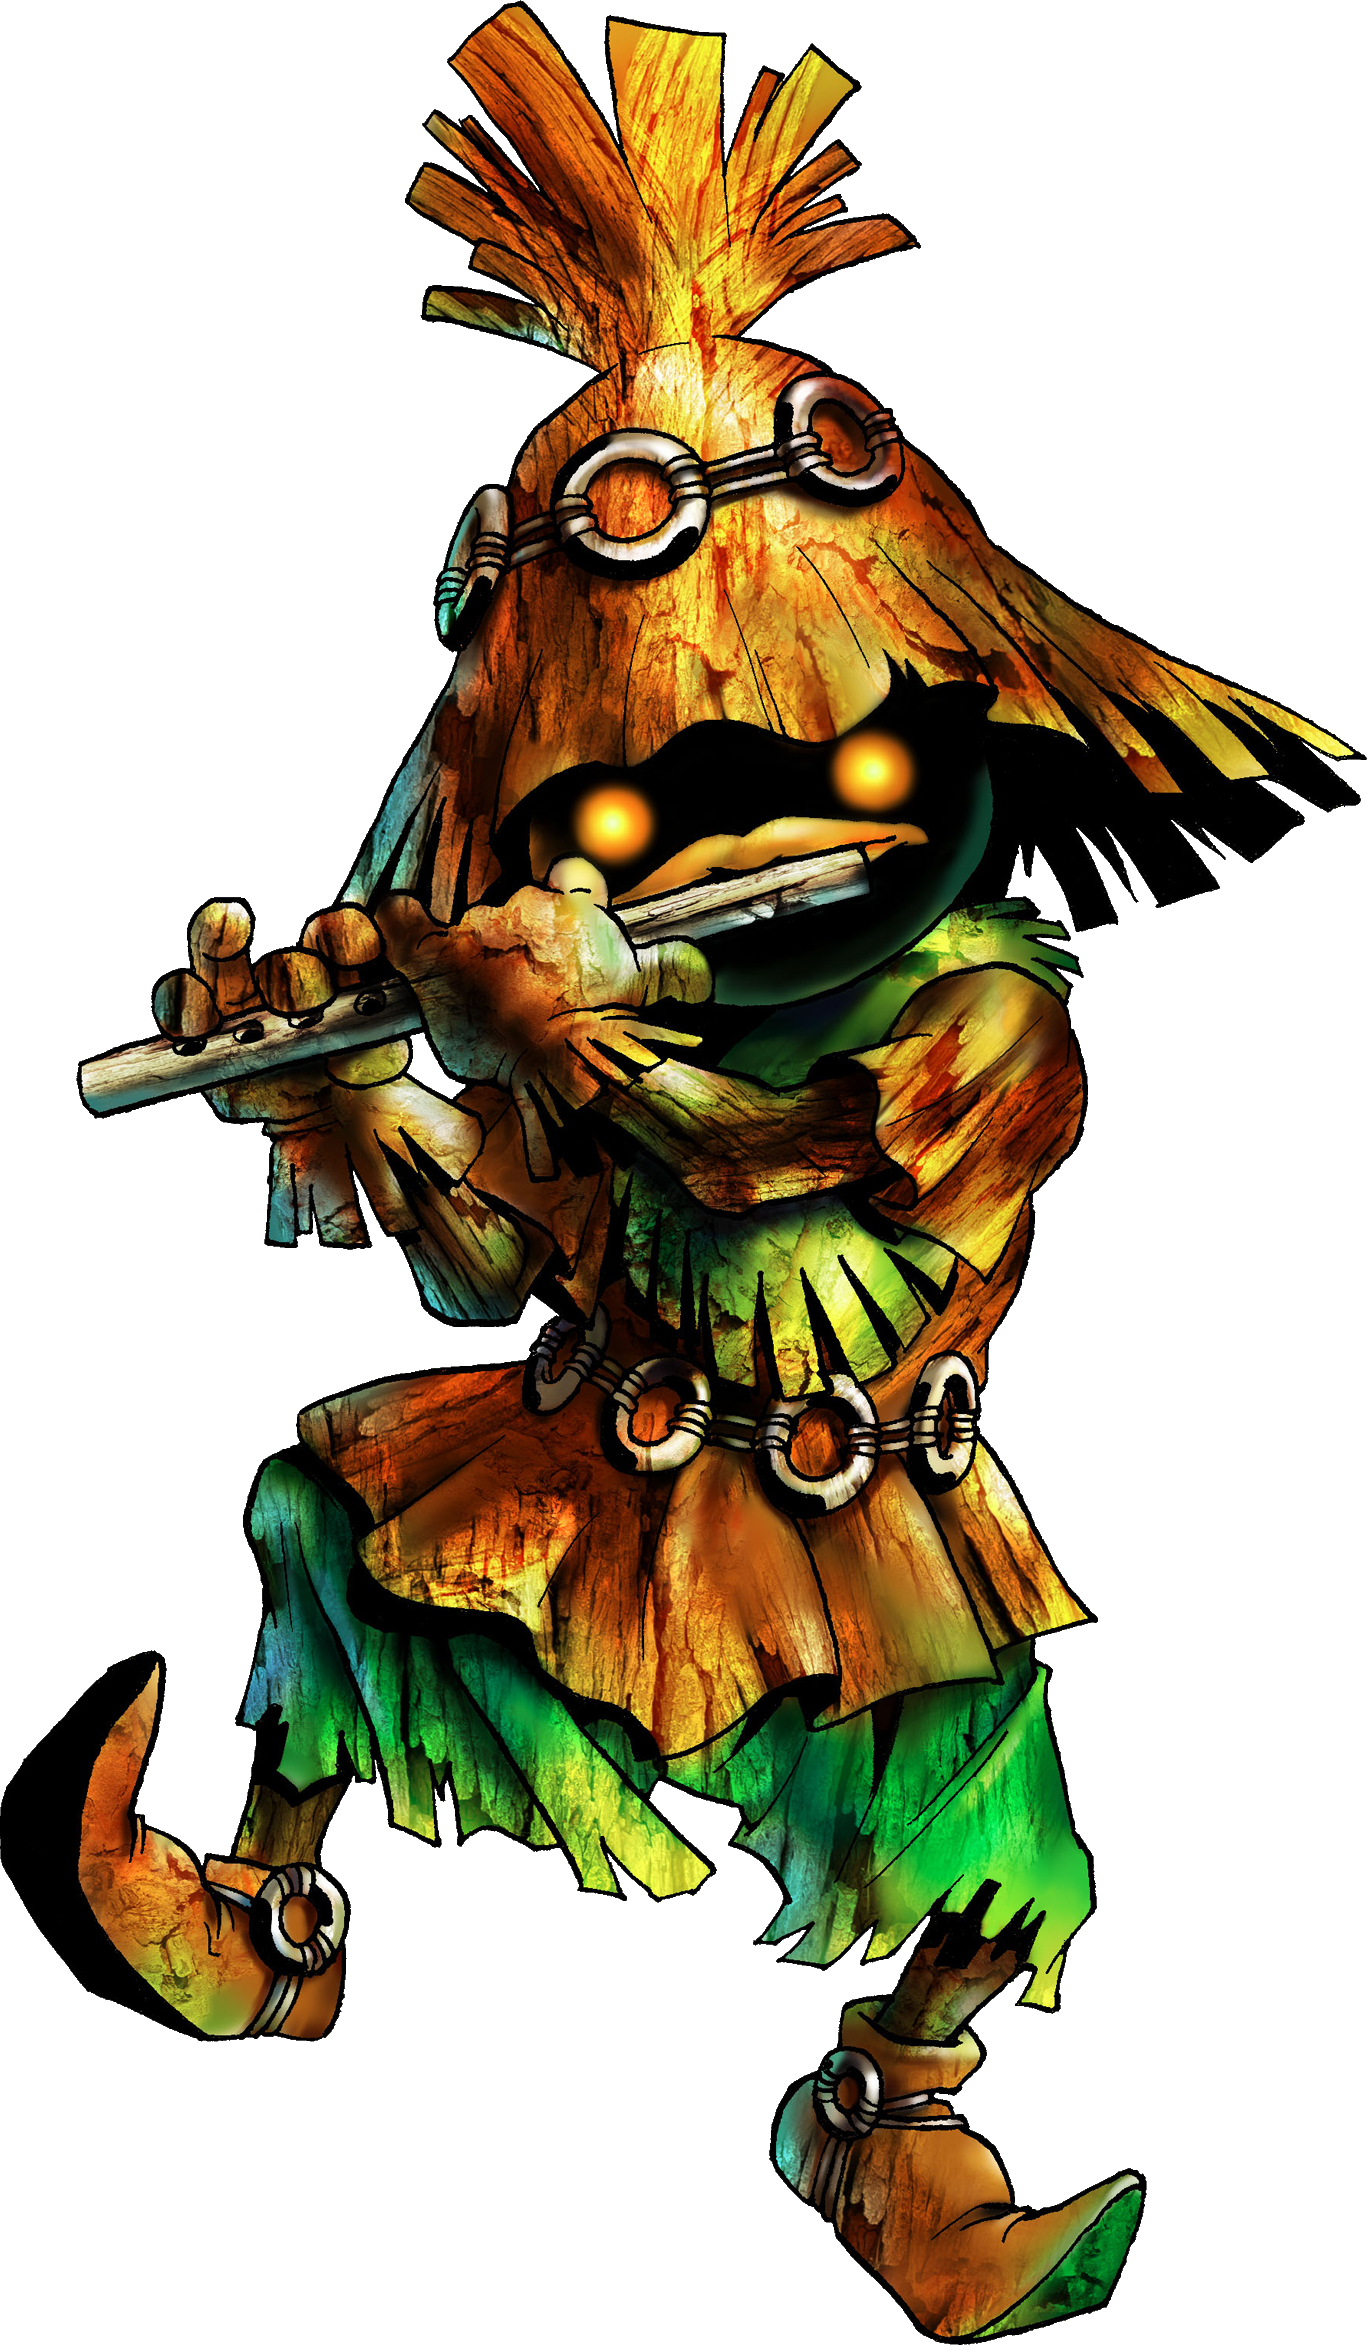 legend of zelda ocarina of time enemies